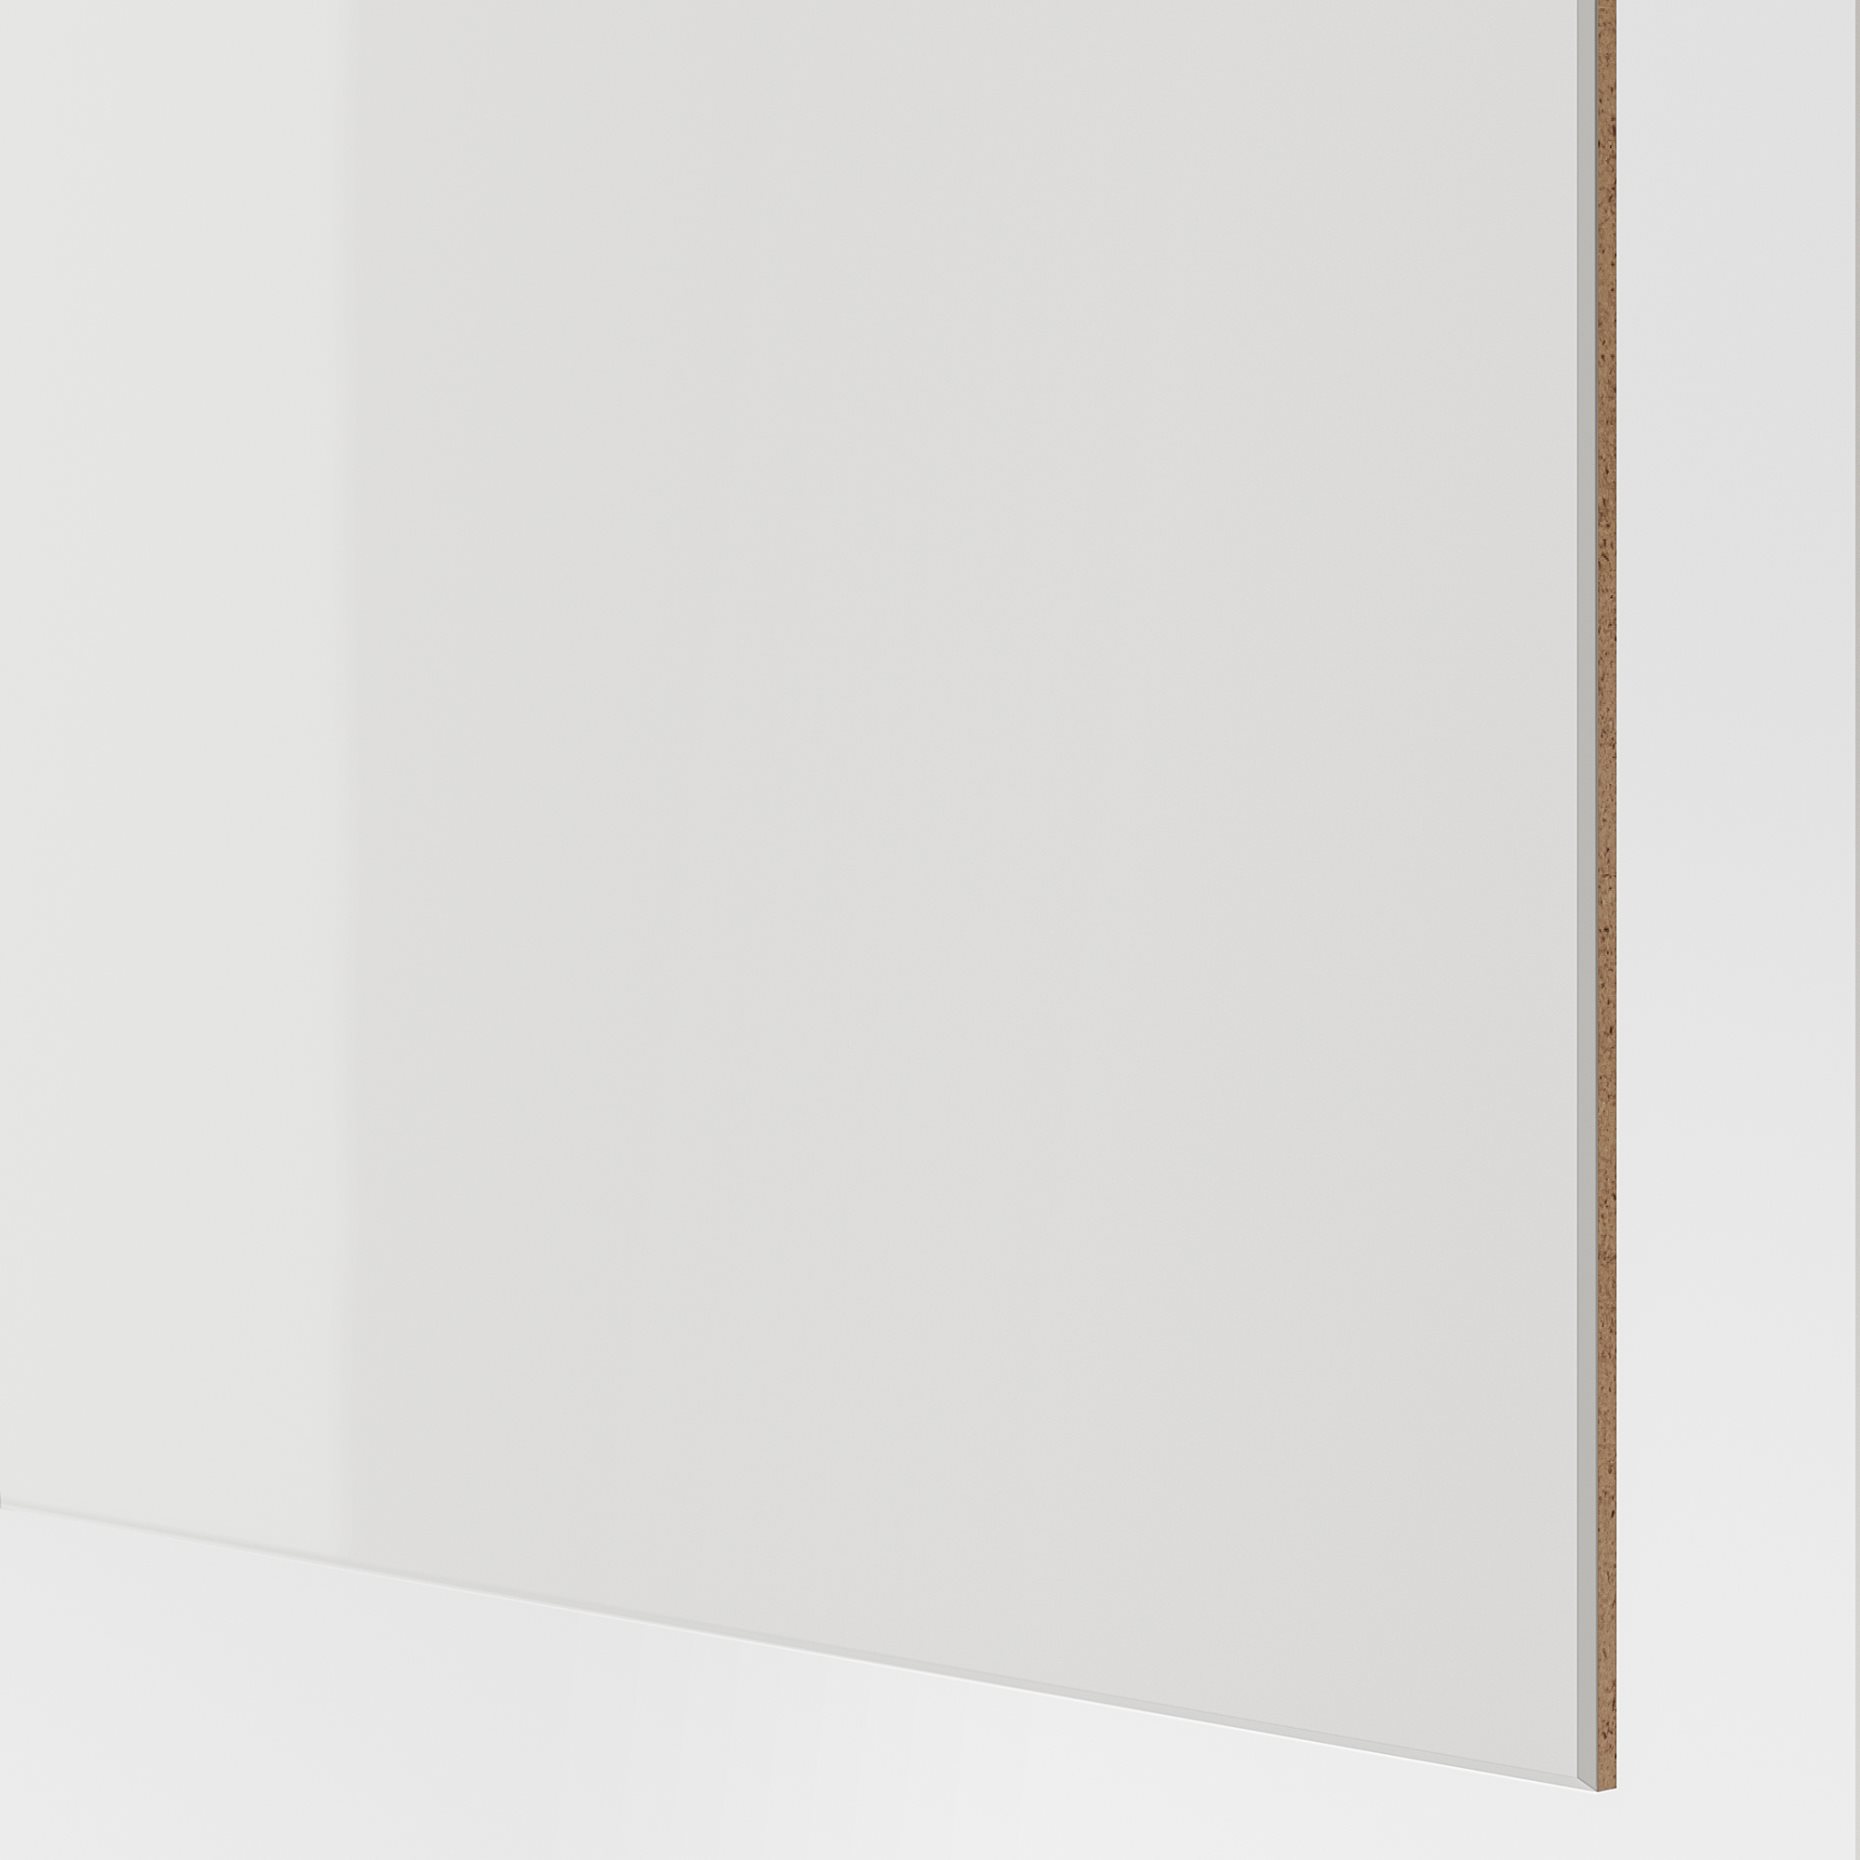 HOKKSUND, 4 panels for sliding door frame, 003.823.44